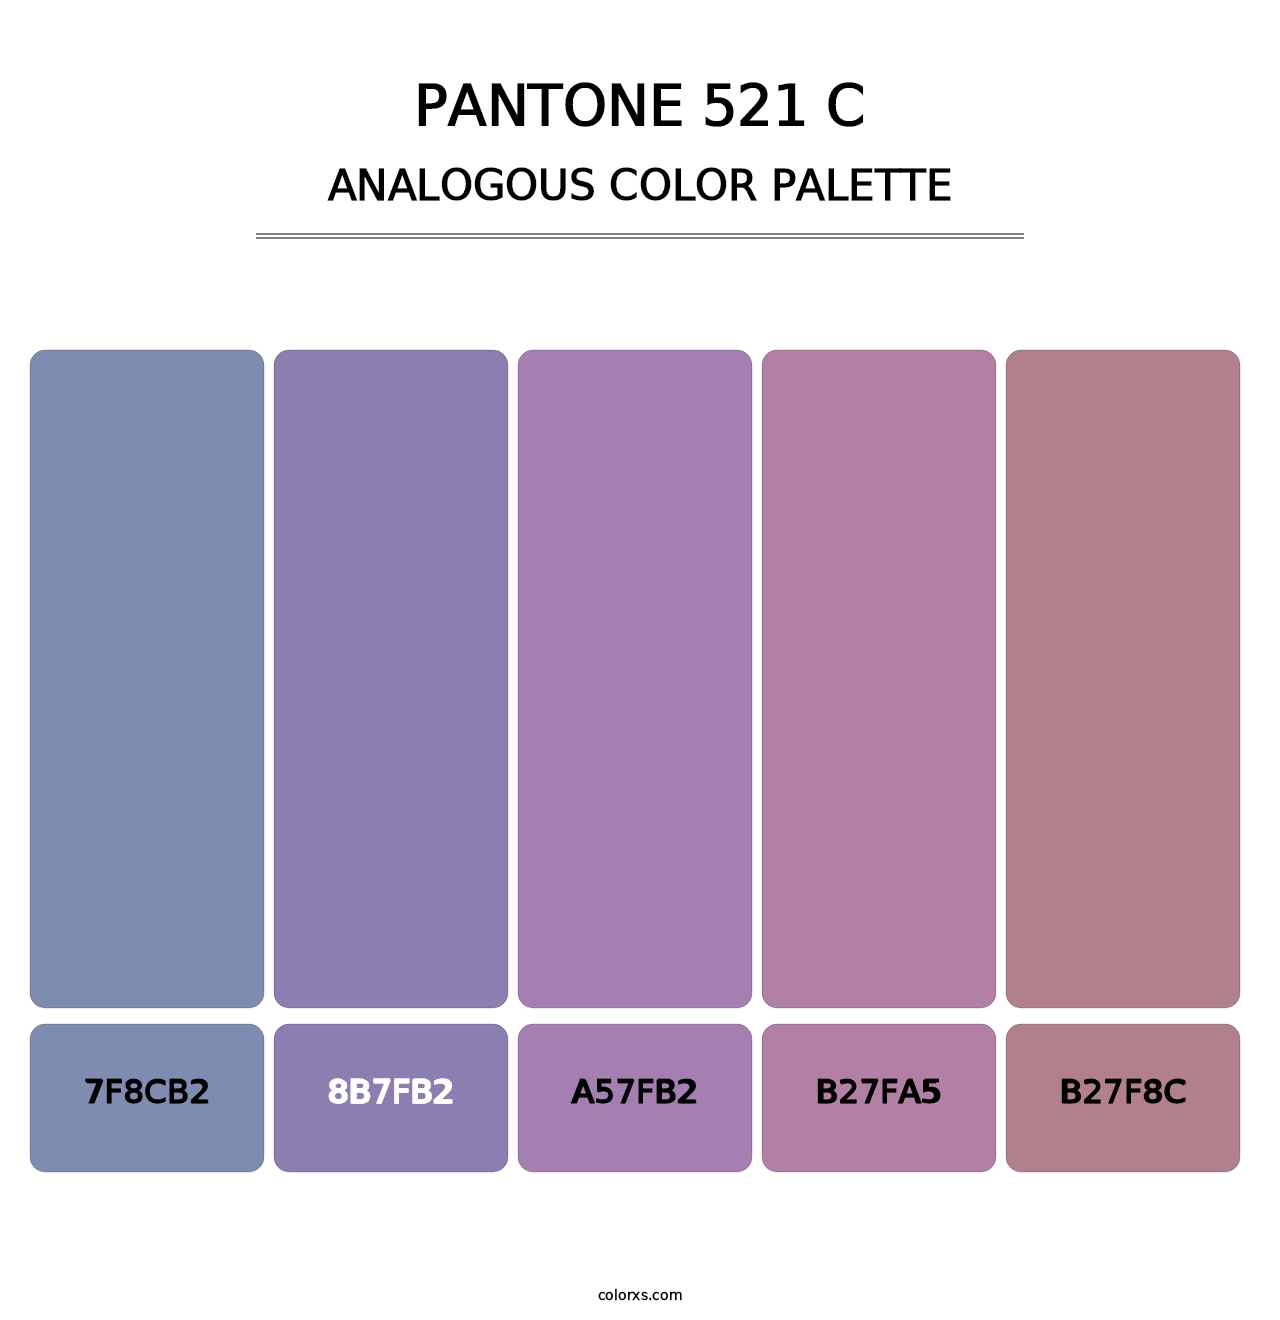 PANTONE 521 C - Analogous Color Palette